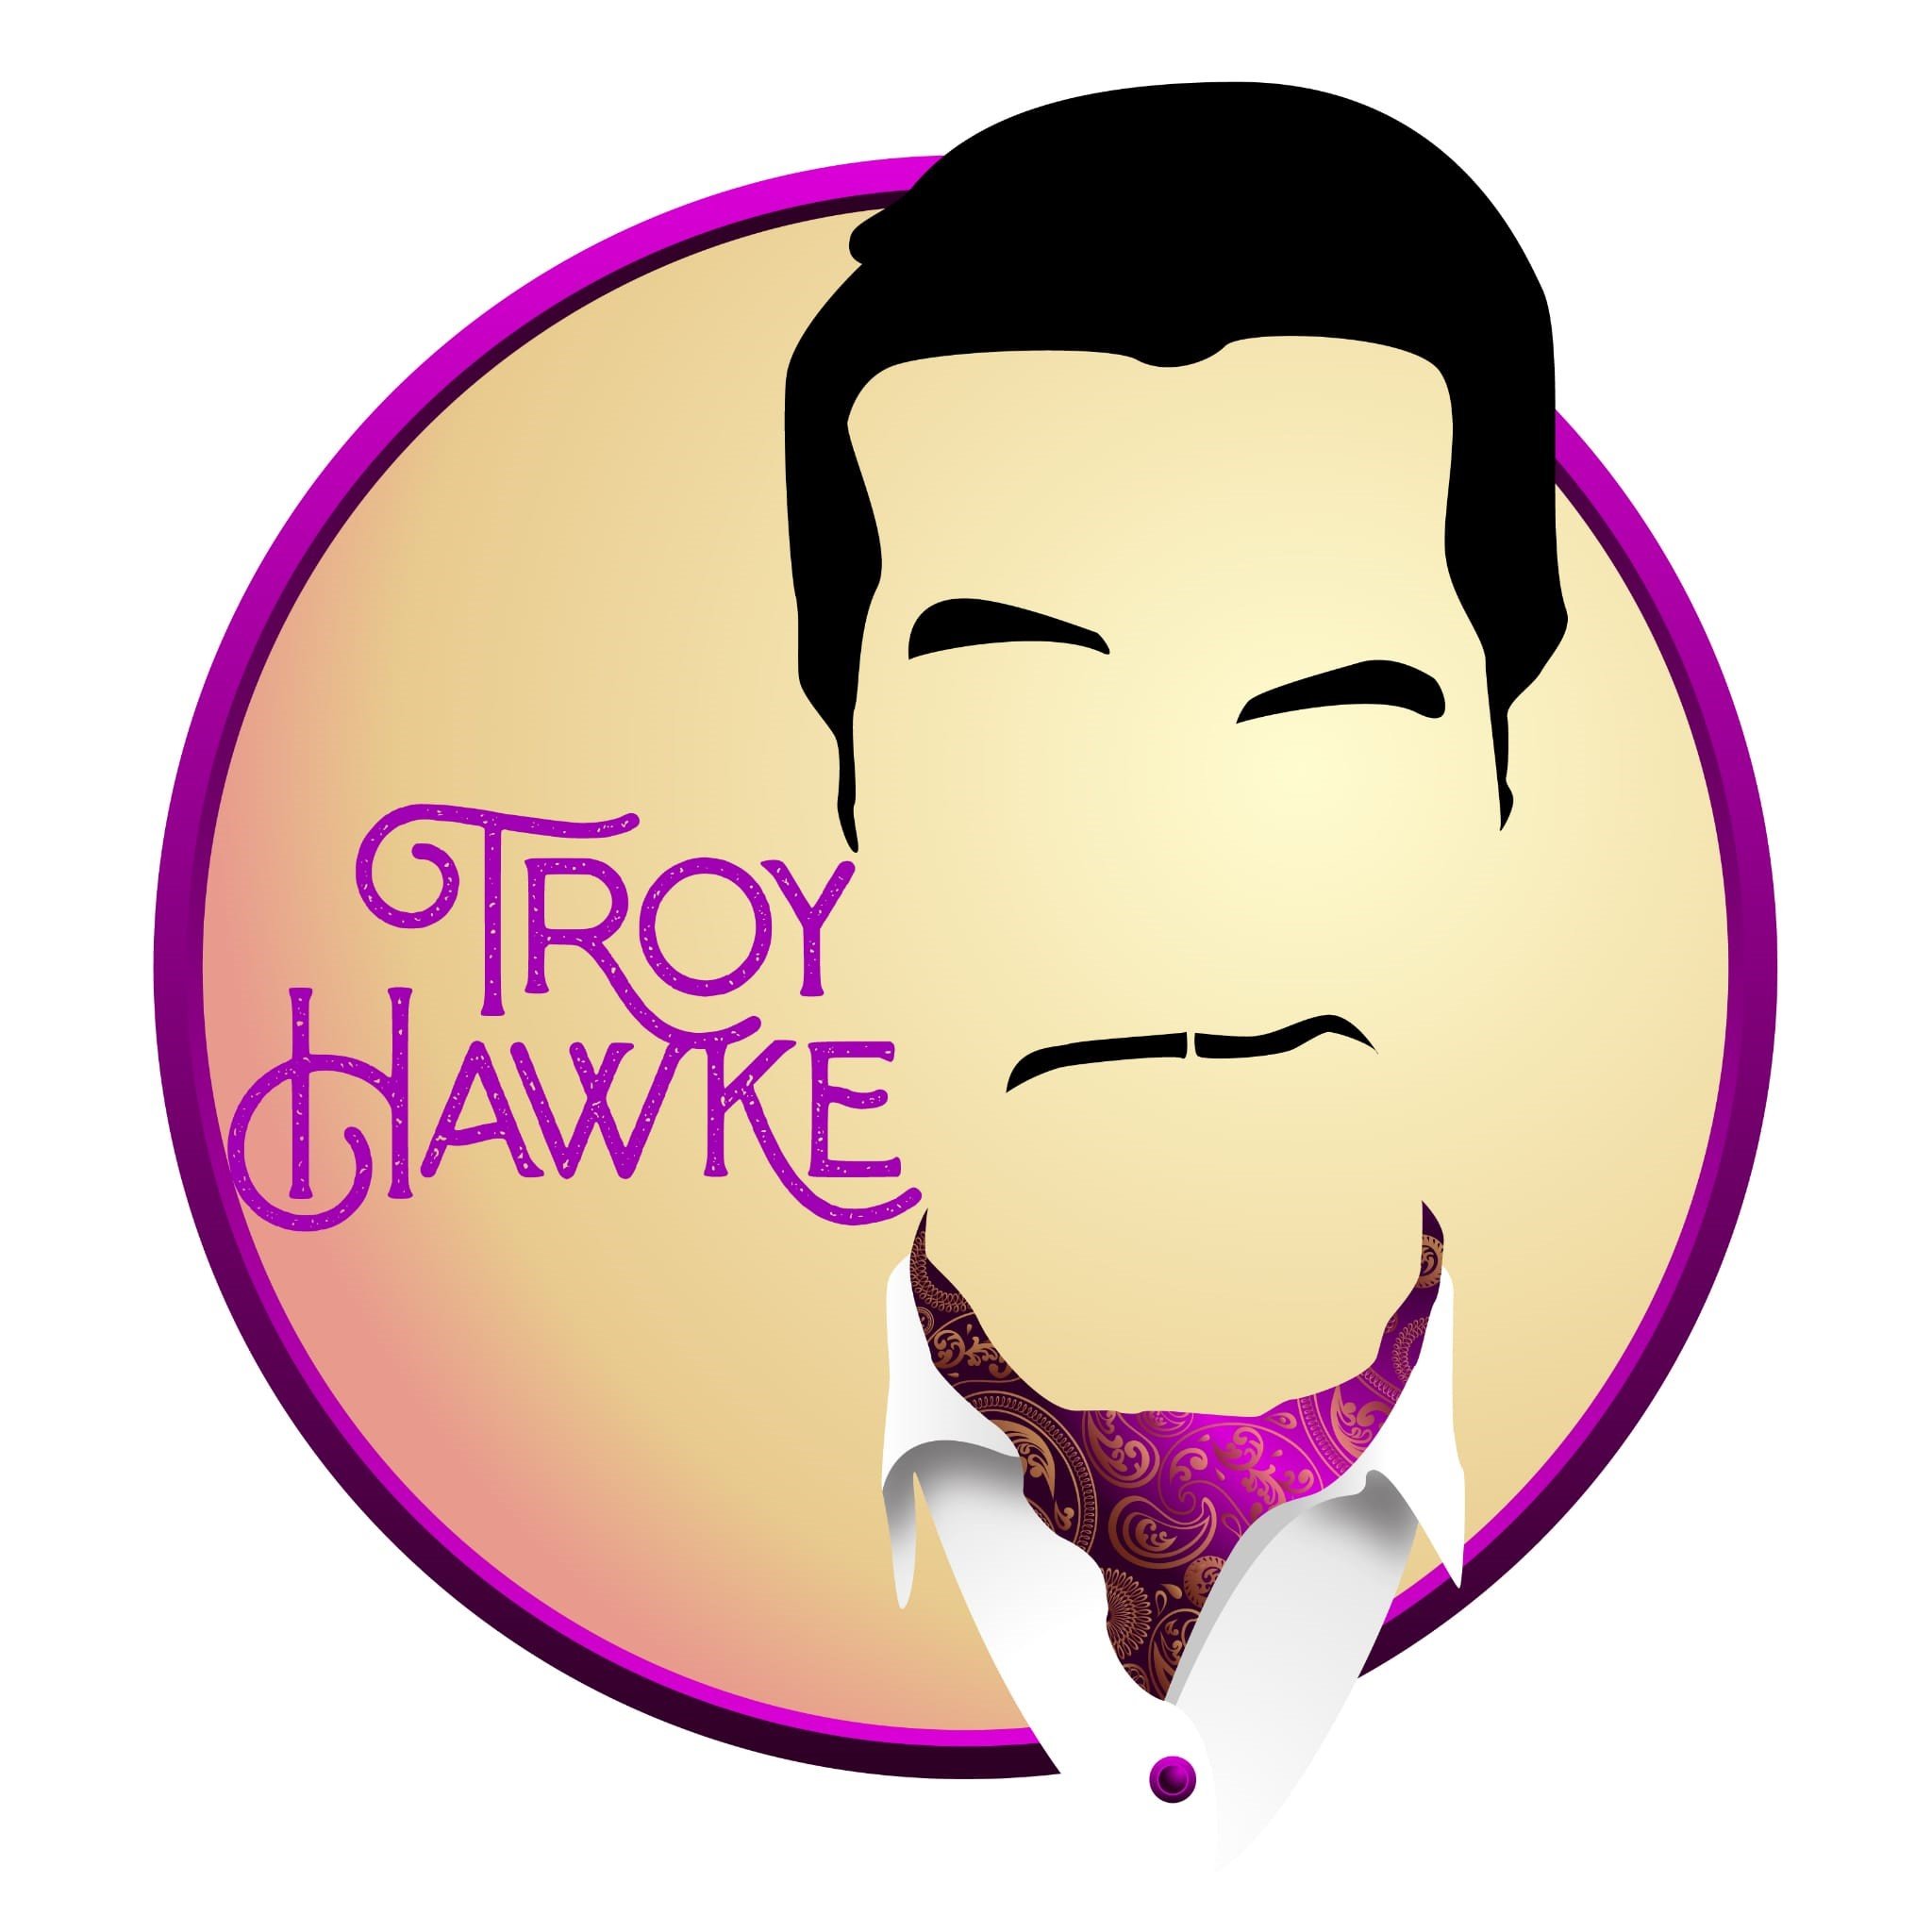 8aee1e7487b7-Troy_Hawke_Logo___Copy.jpg